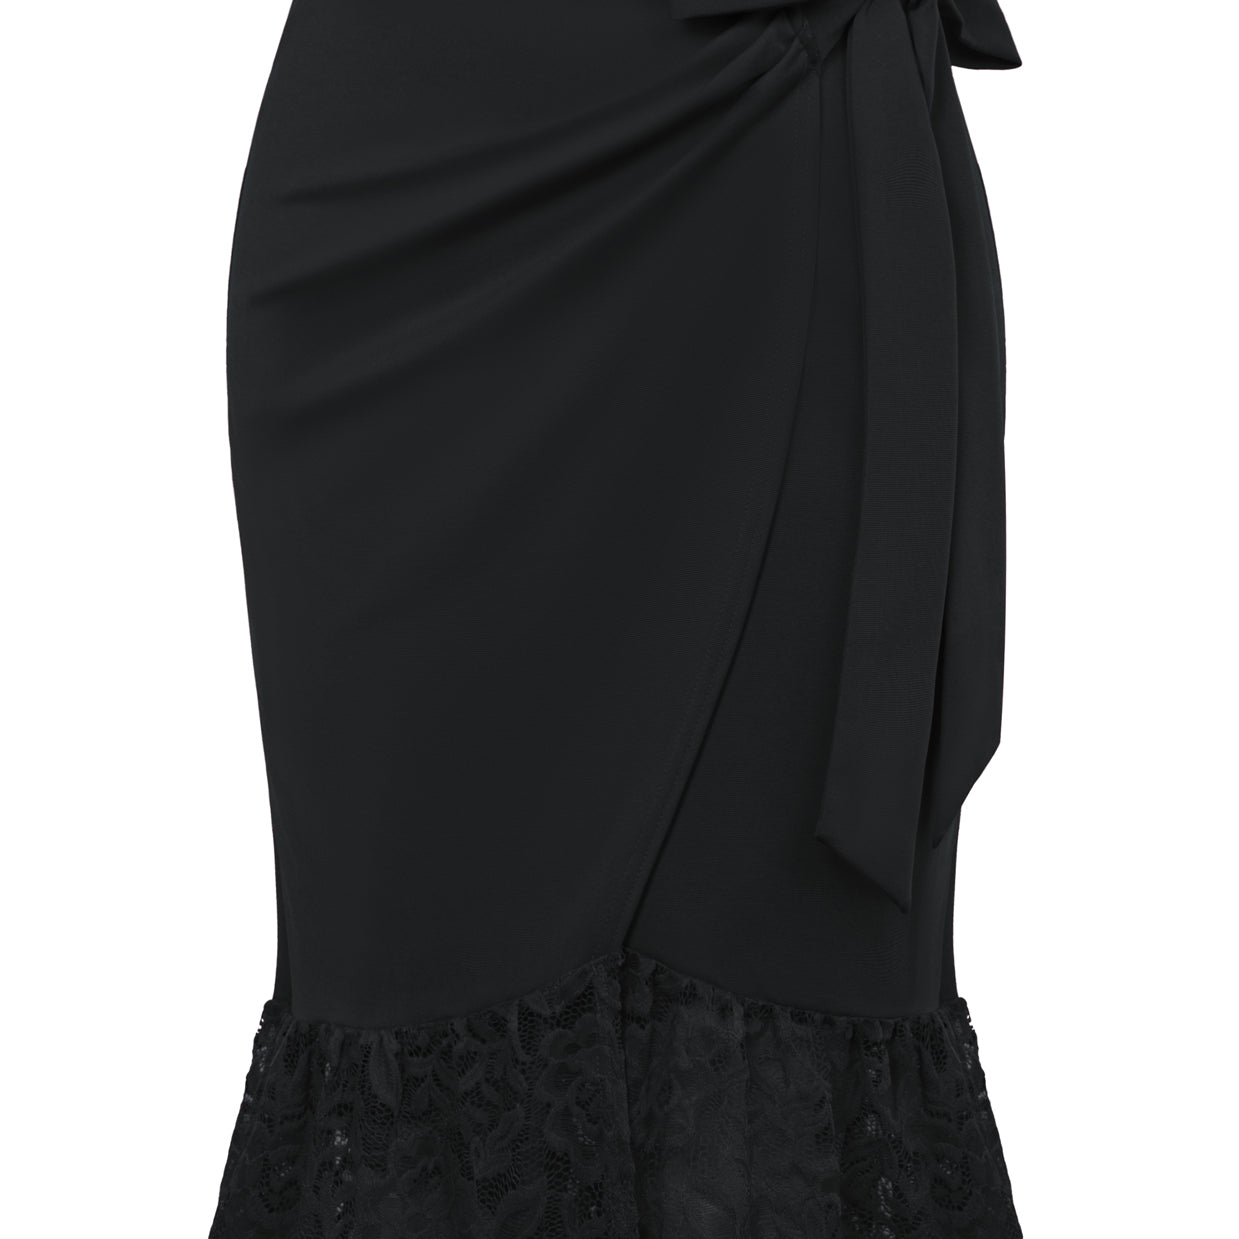 High Waist Overlay Decorated Bodycon Skirt